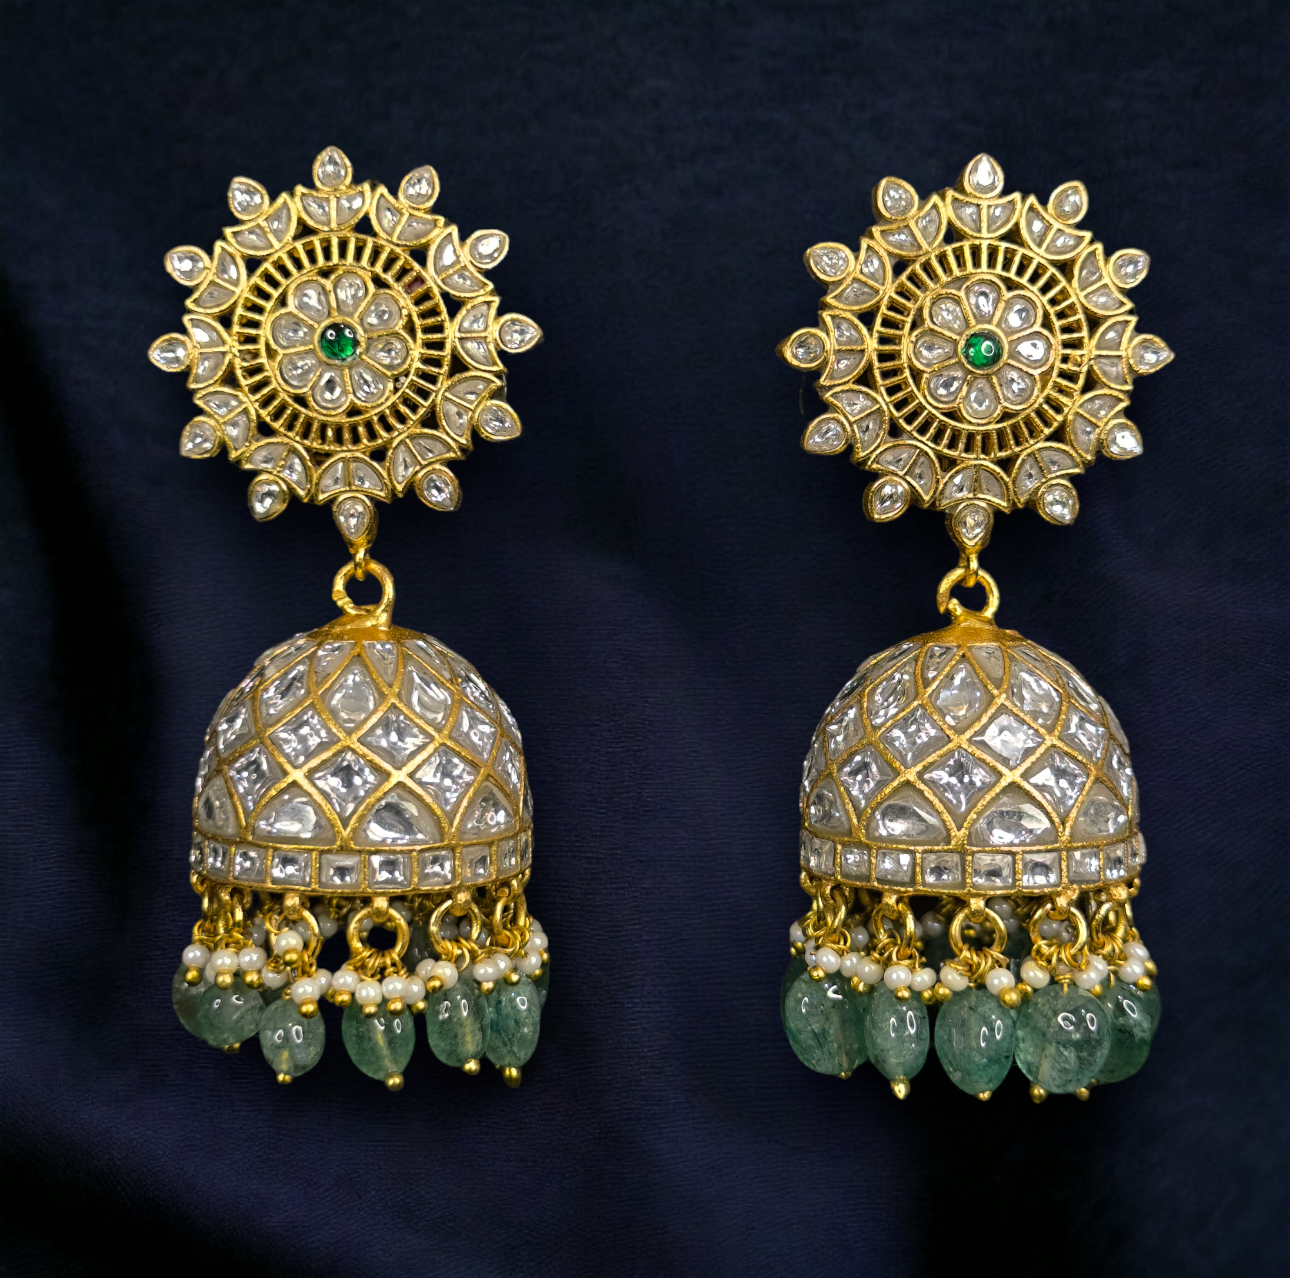 Radiant Floral Jadau Kundan Jhumkas with Emerald Beads